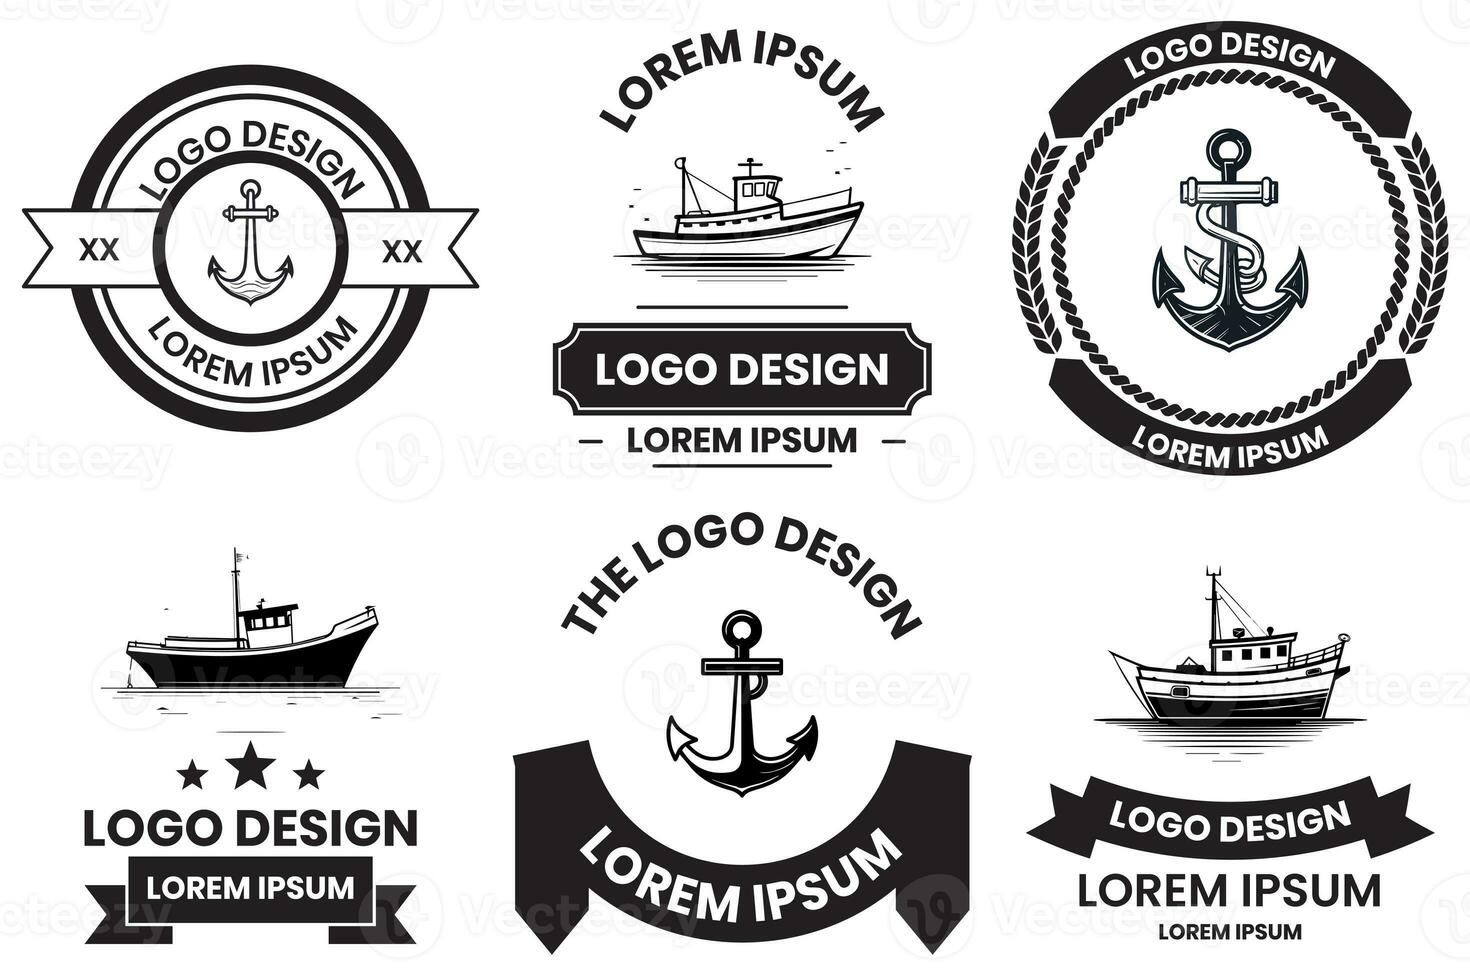 visvangst en maritiem logo in vlak lijn kunst stijl foto